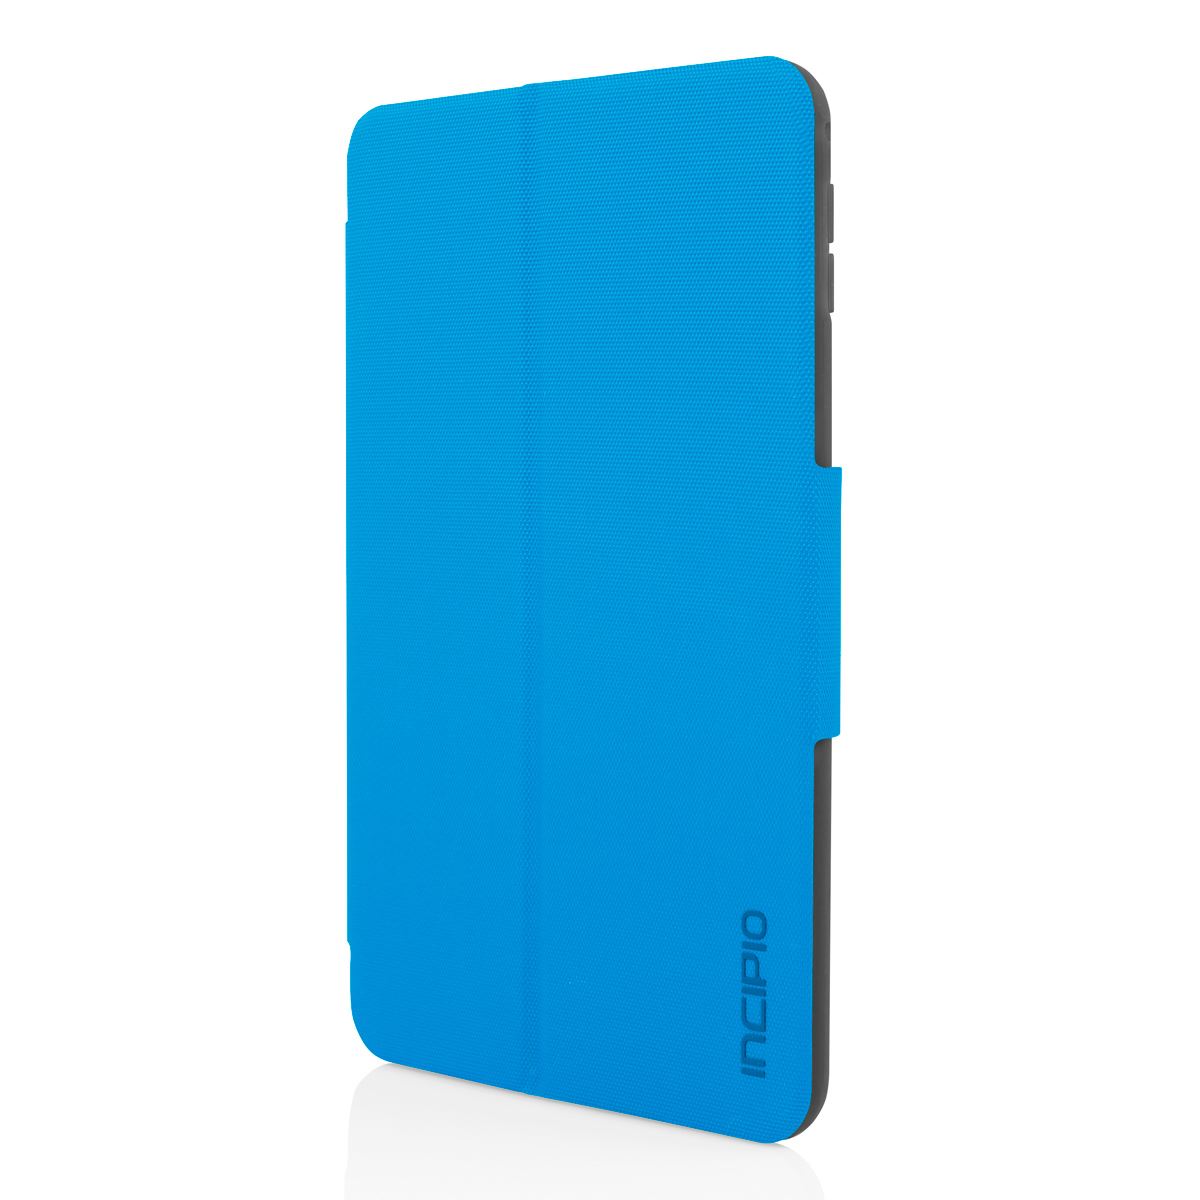 Funda Incipio Clarion Folio iPad mini 4 Azul